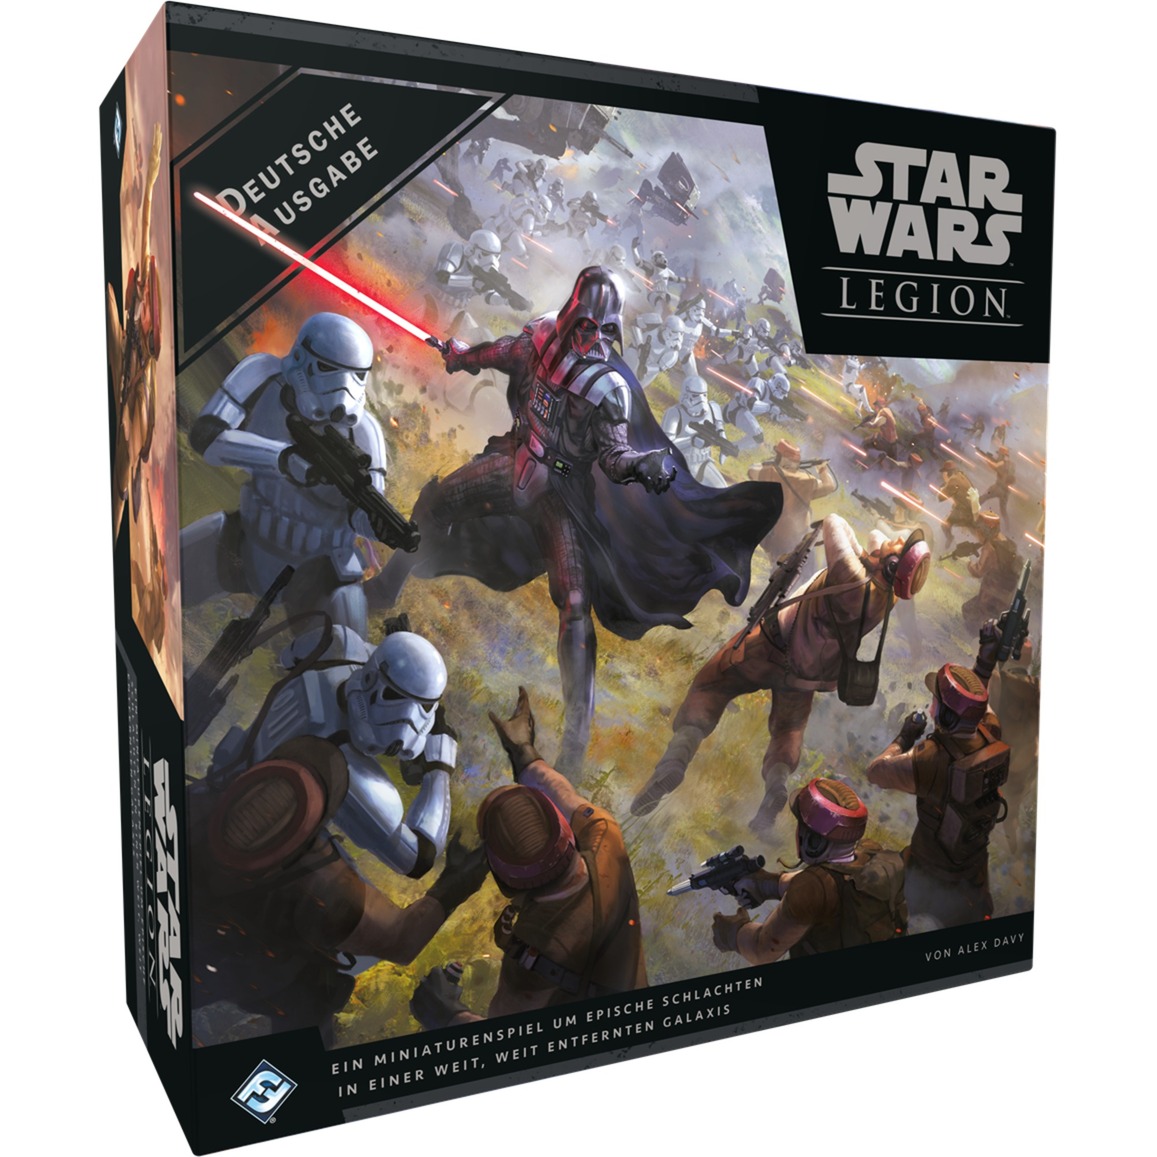 Image of Alternate - Star Wars: Legion - Grundspiel, Tabletop online einkaufen bei Alternate